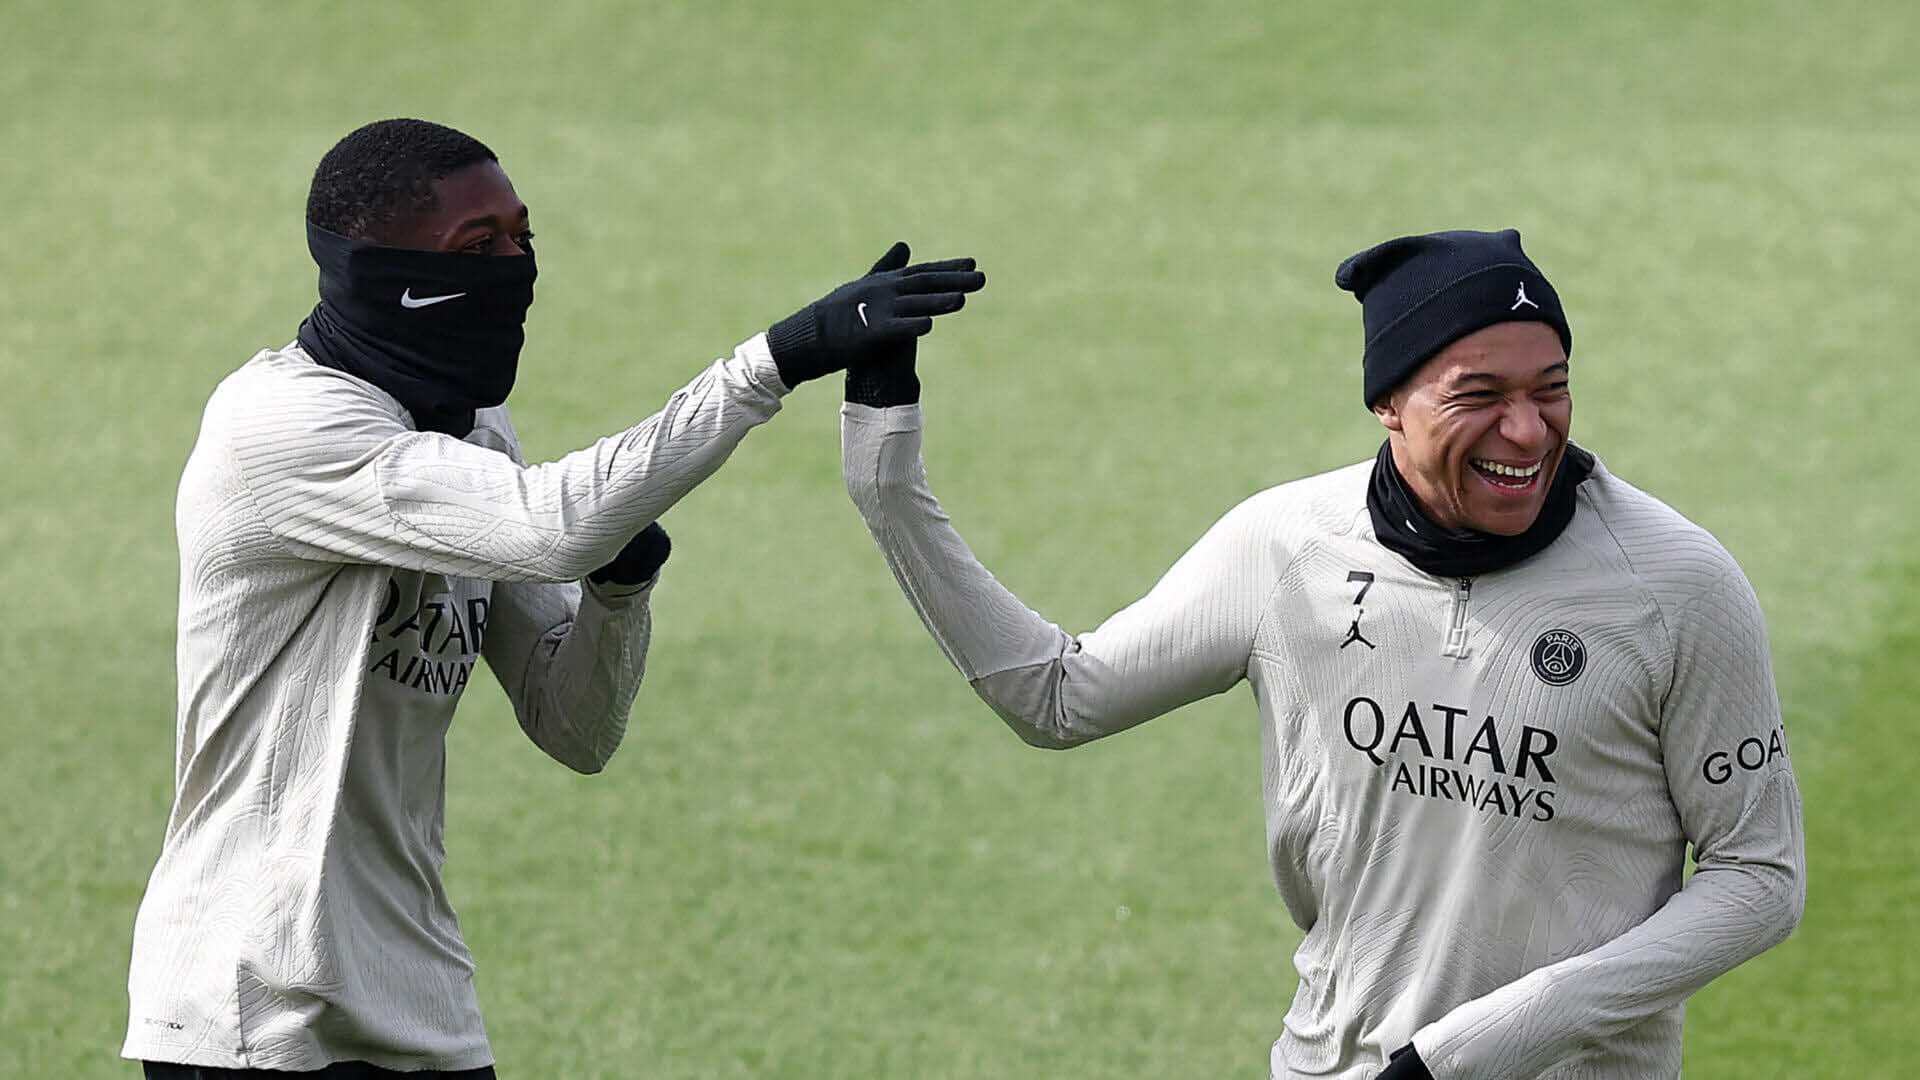 Mbappe và Dembele sẽ là tâm điểm chú ý bên phía PSG trong trận gặp Barcelona.  Ảnh: AFP